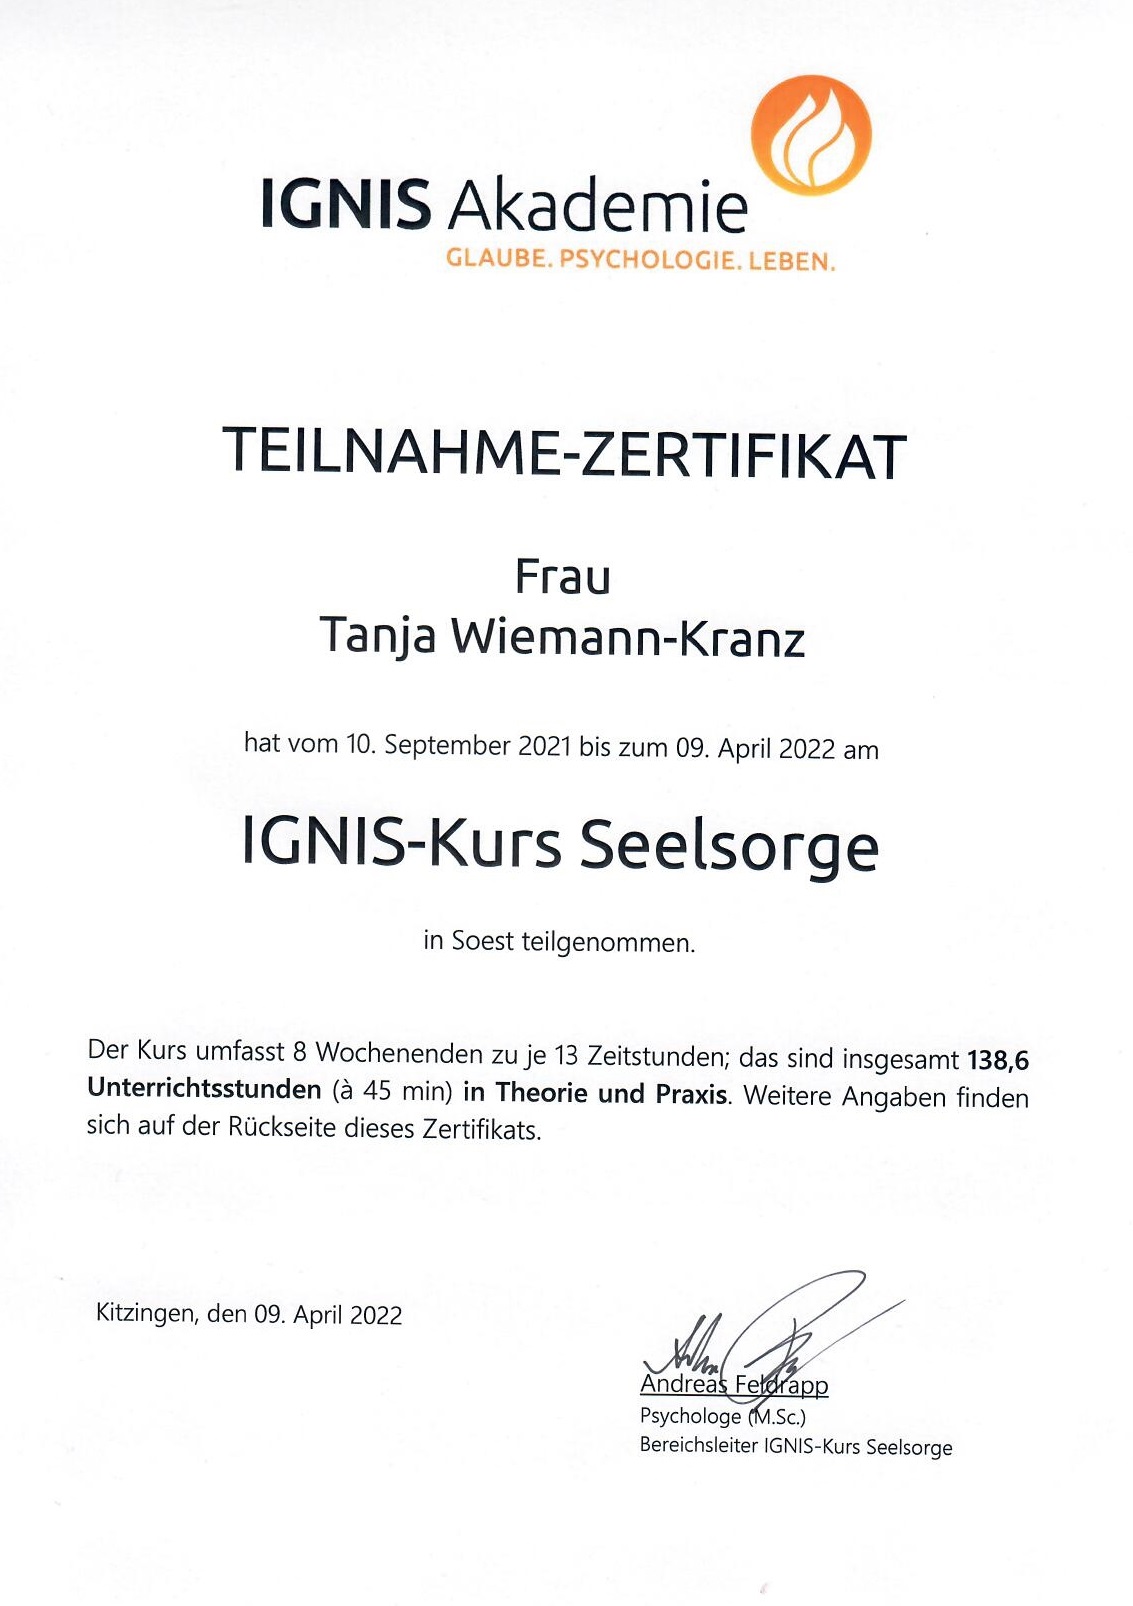 Hier sollten Sie eine Abbildung des Zertifikats über meine Teilnahme am IGNIS-Kurs Seelsorge sehen können.